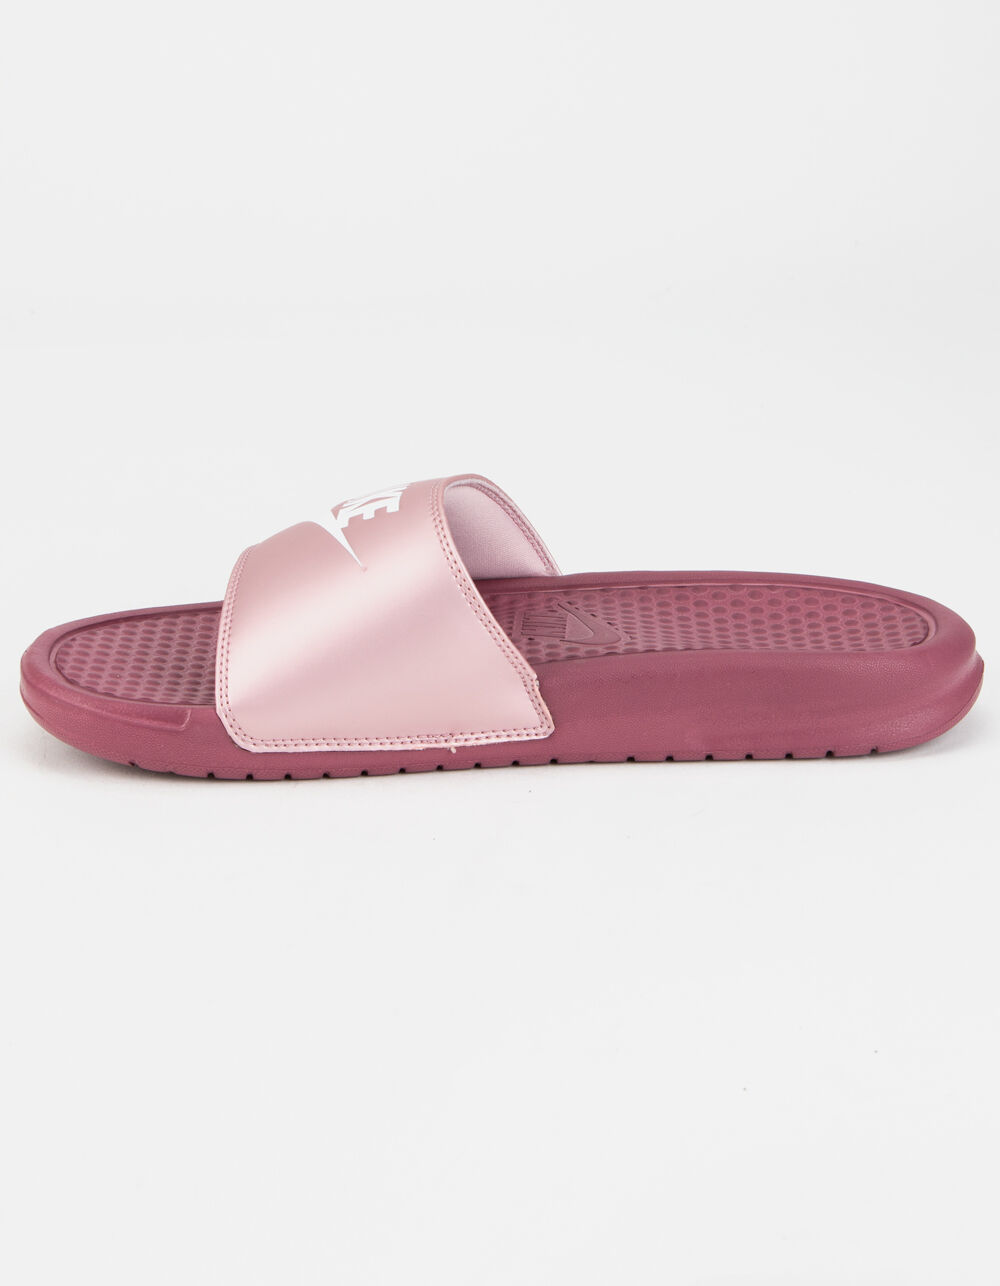 NIKE Benassi Womens Slide Sandals - PINK | Tillys